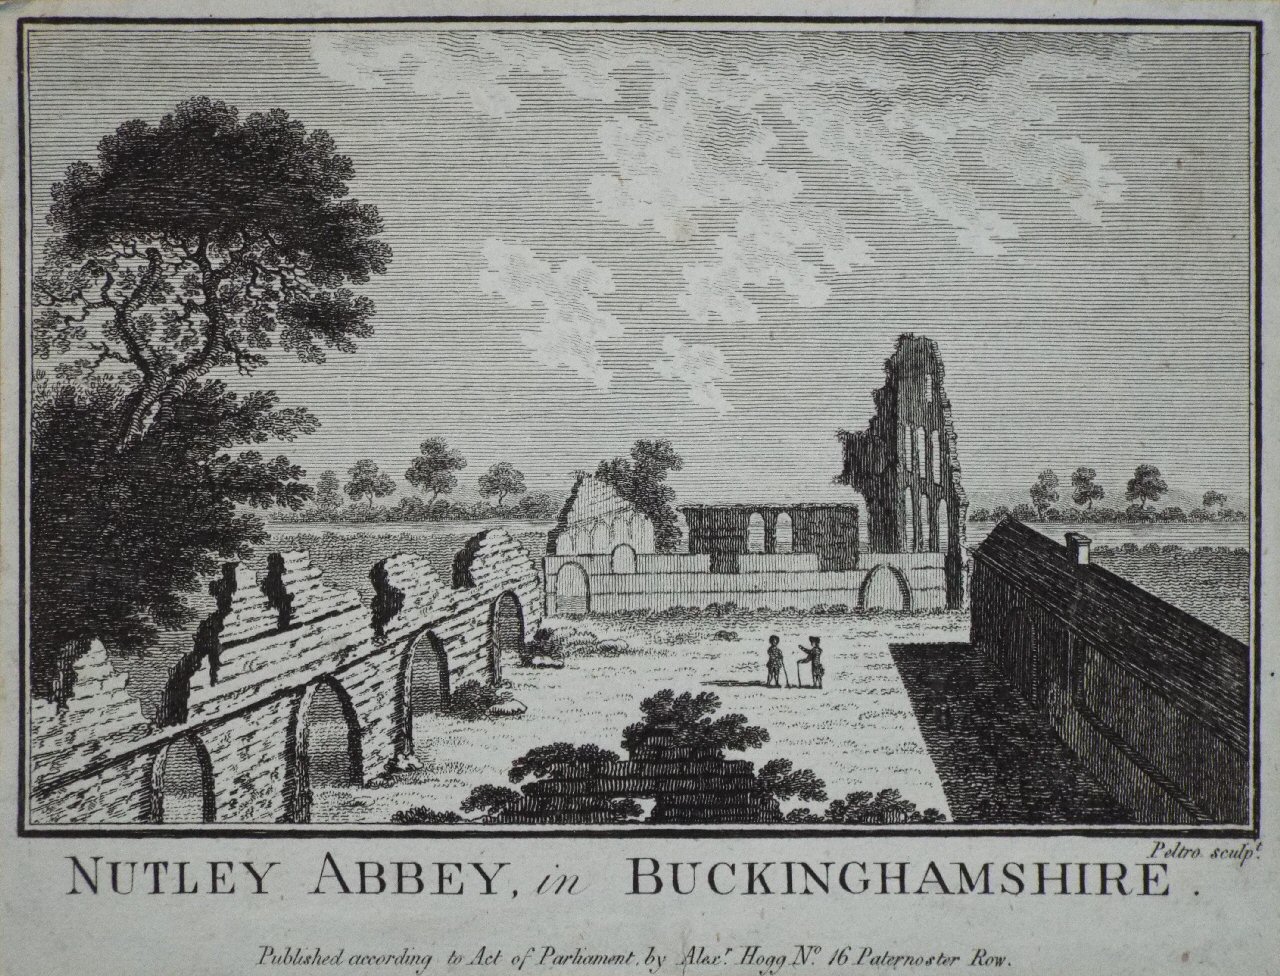 Print - Nutley Abbey, in Buckinghamshire. - 